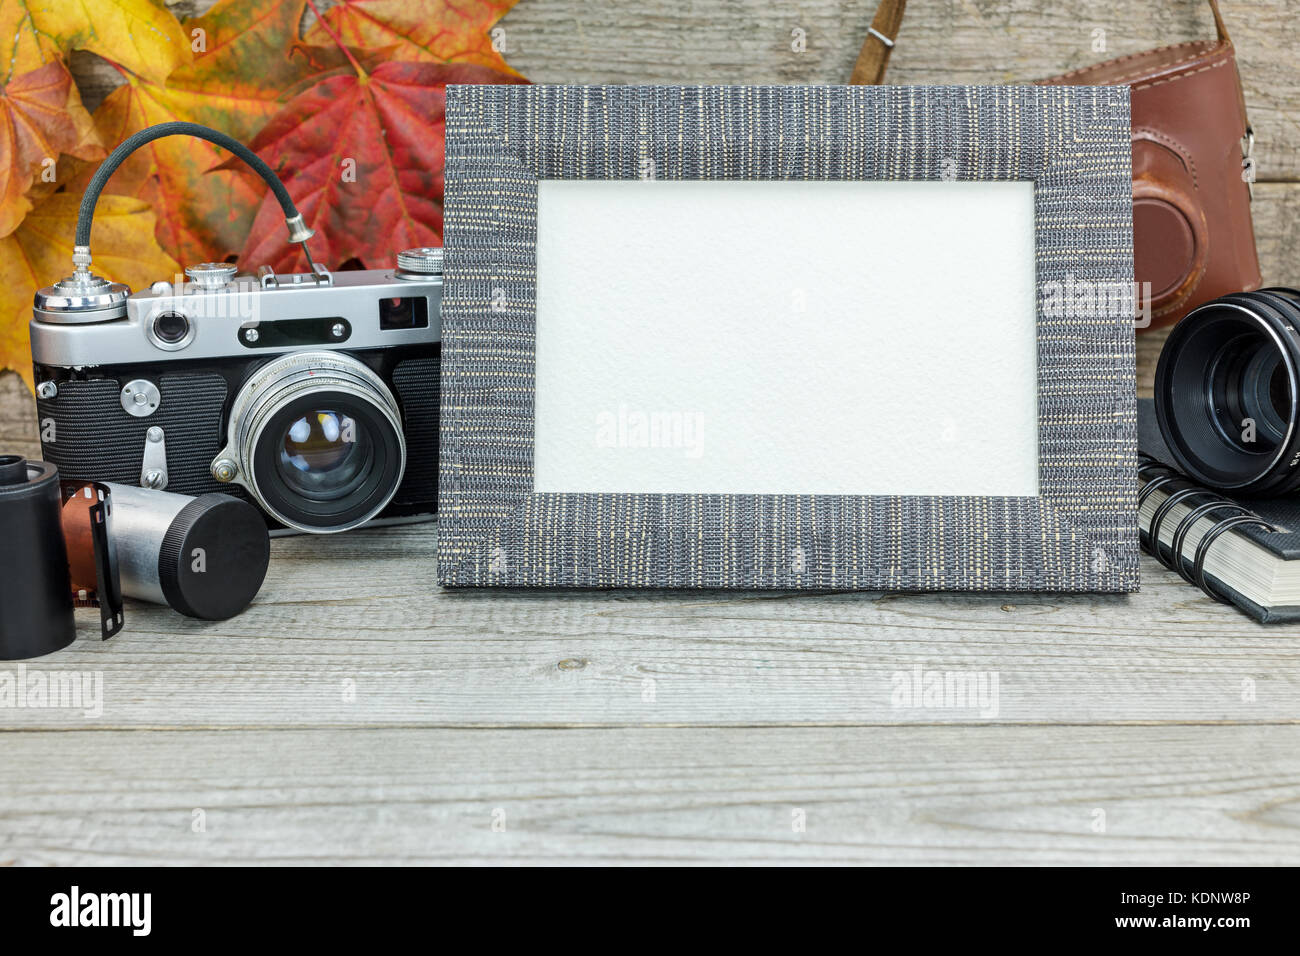 Grunge background avec classic appareil photo, cadre photo vide, l'objectif et les rouleaux de film Banque D'Images